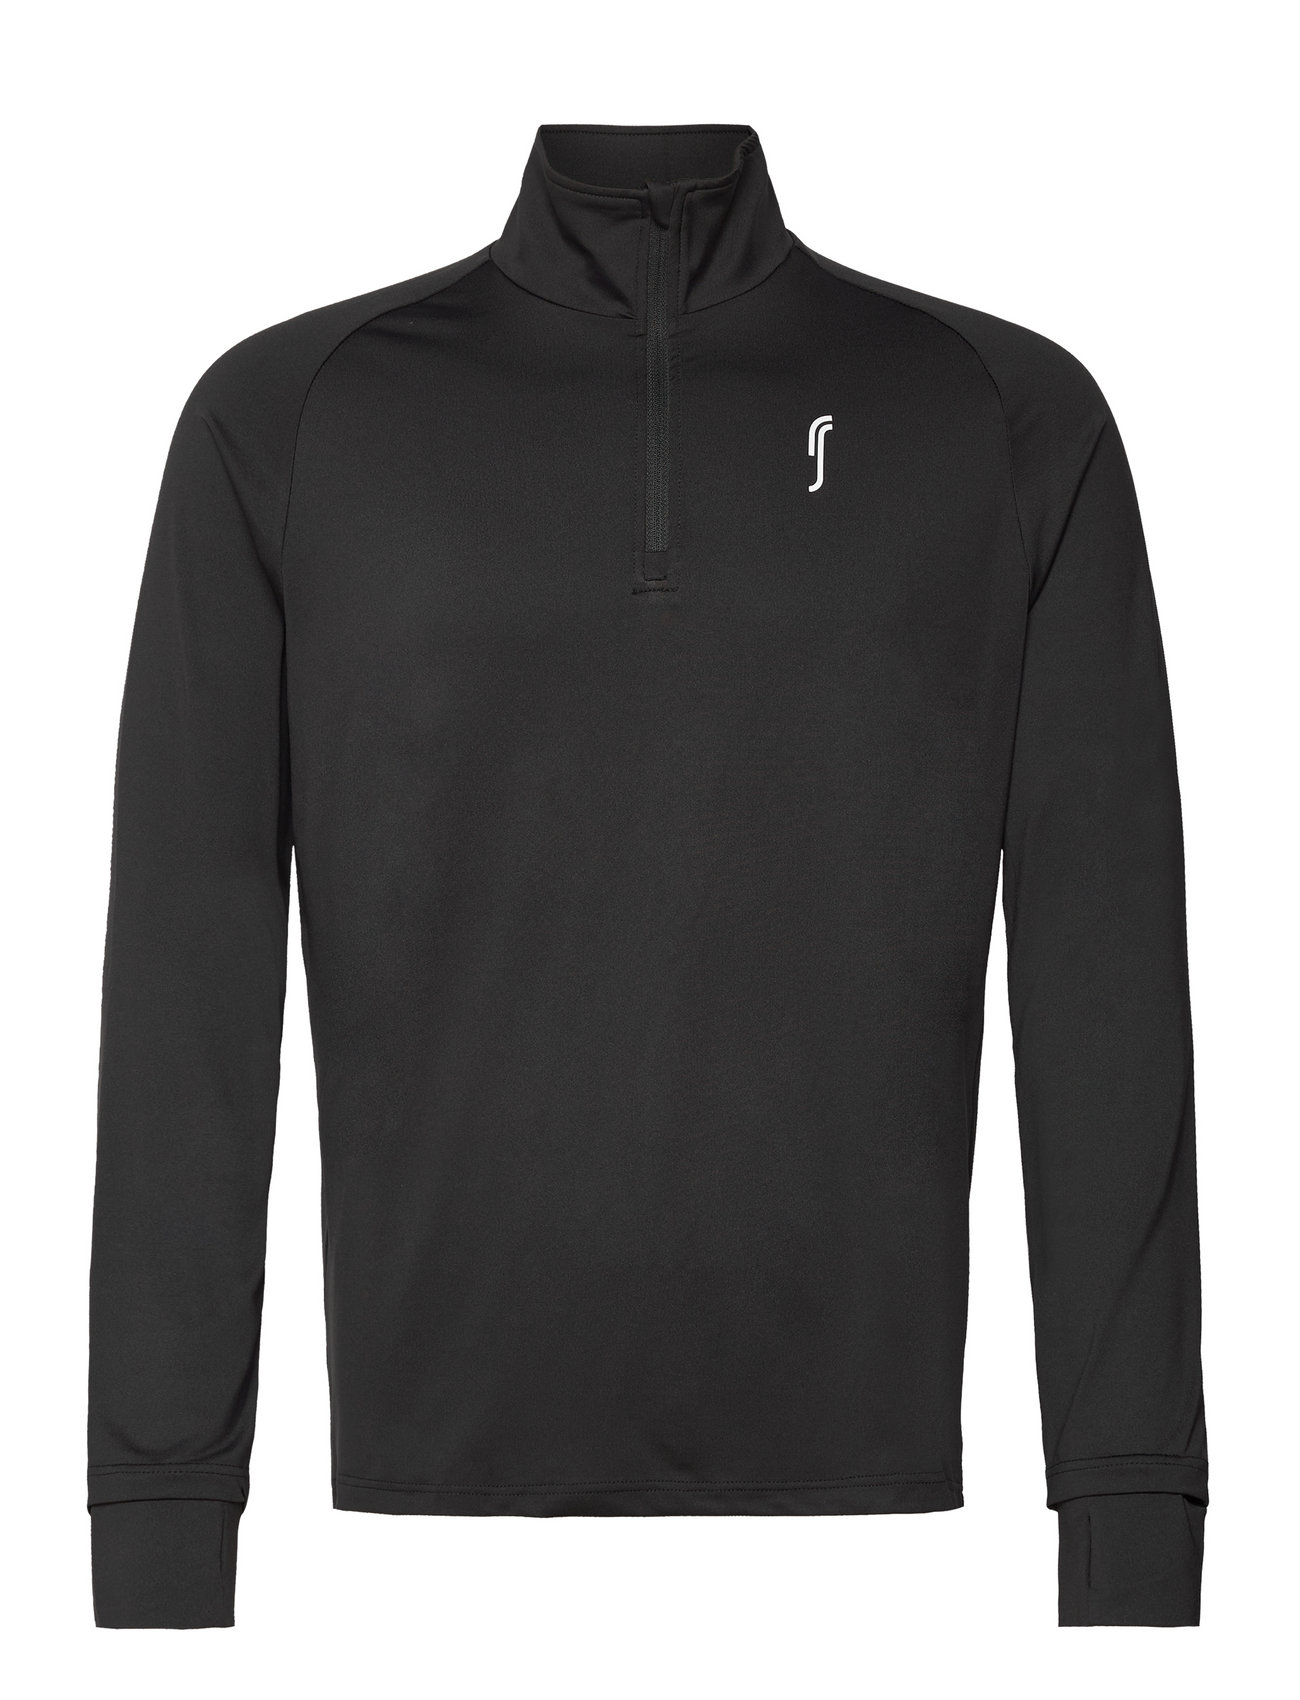 Men’s Half Zip Sweater Sport Sweatshirts & Hoodies Sweatshirts Black RS Sports